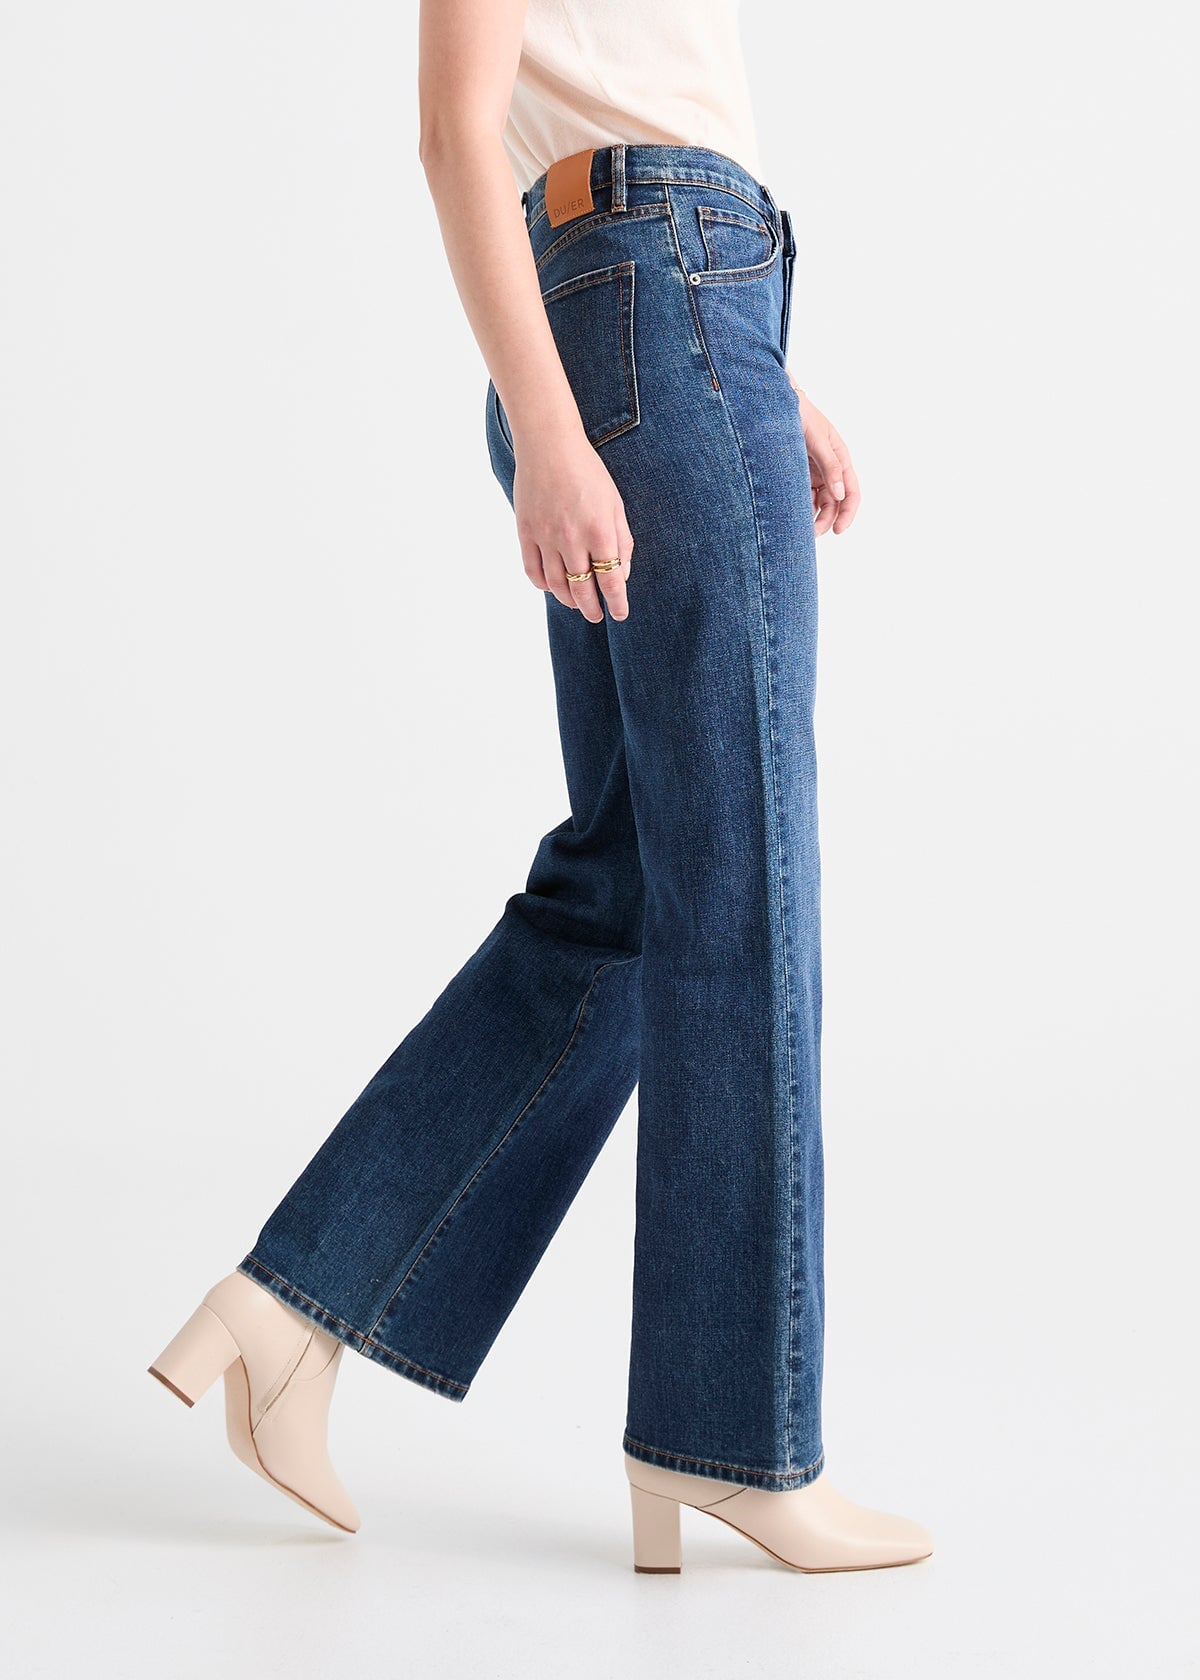 Women's Wide Leg Dark blue stretch jeans side